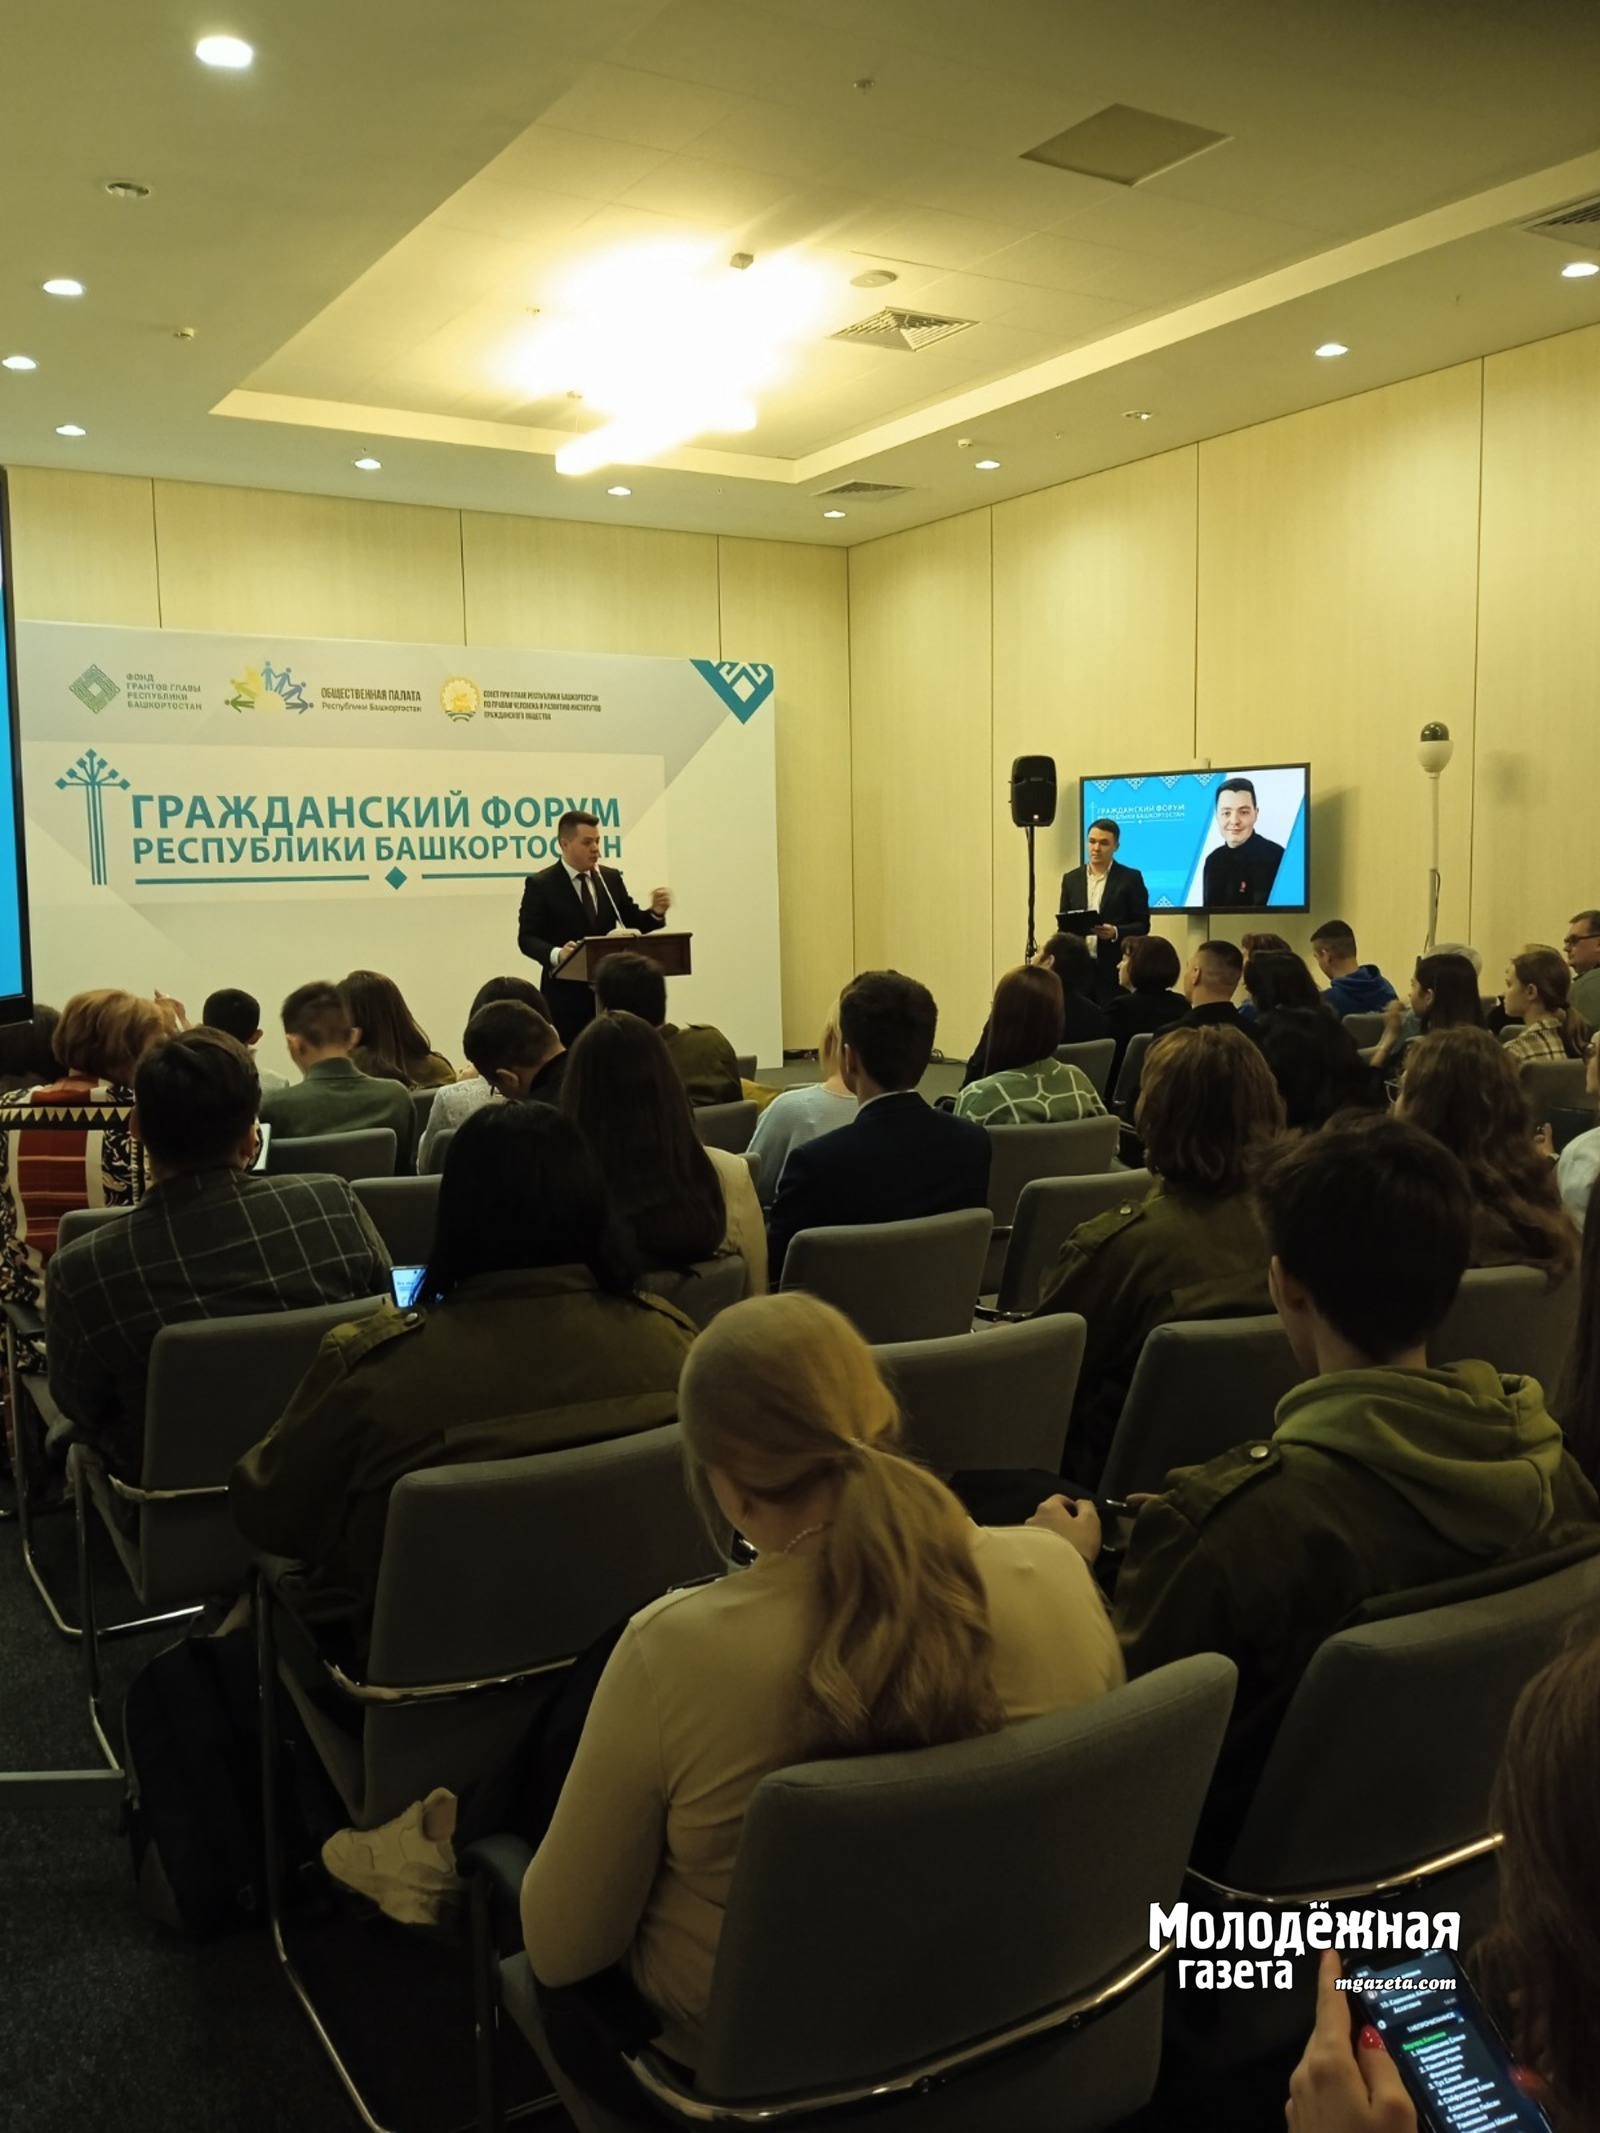 Участников форума приветствует председатель Госкомитета РБ по молодежной политике Вито Сабиров.